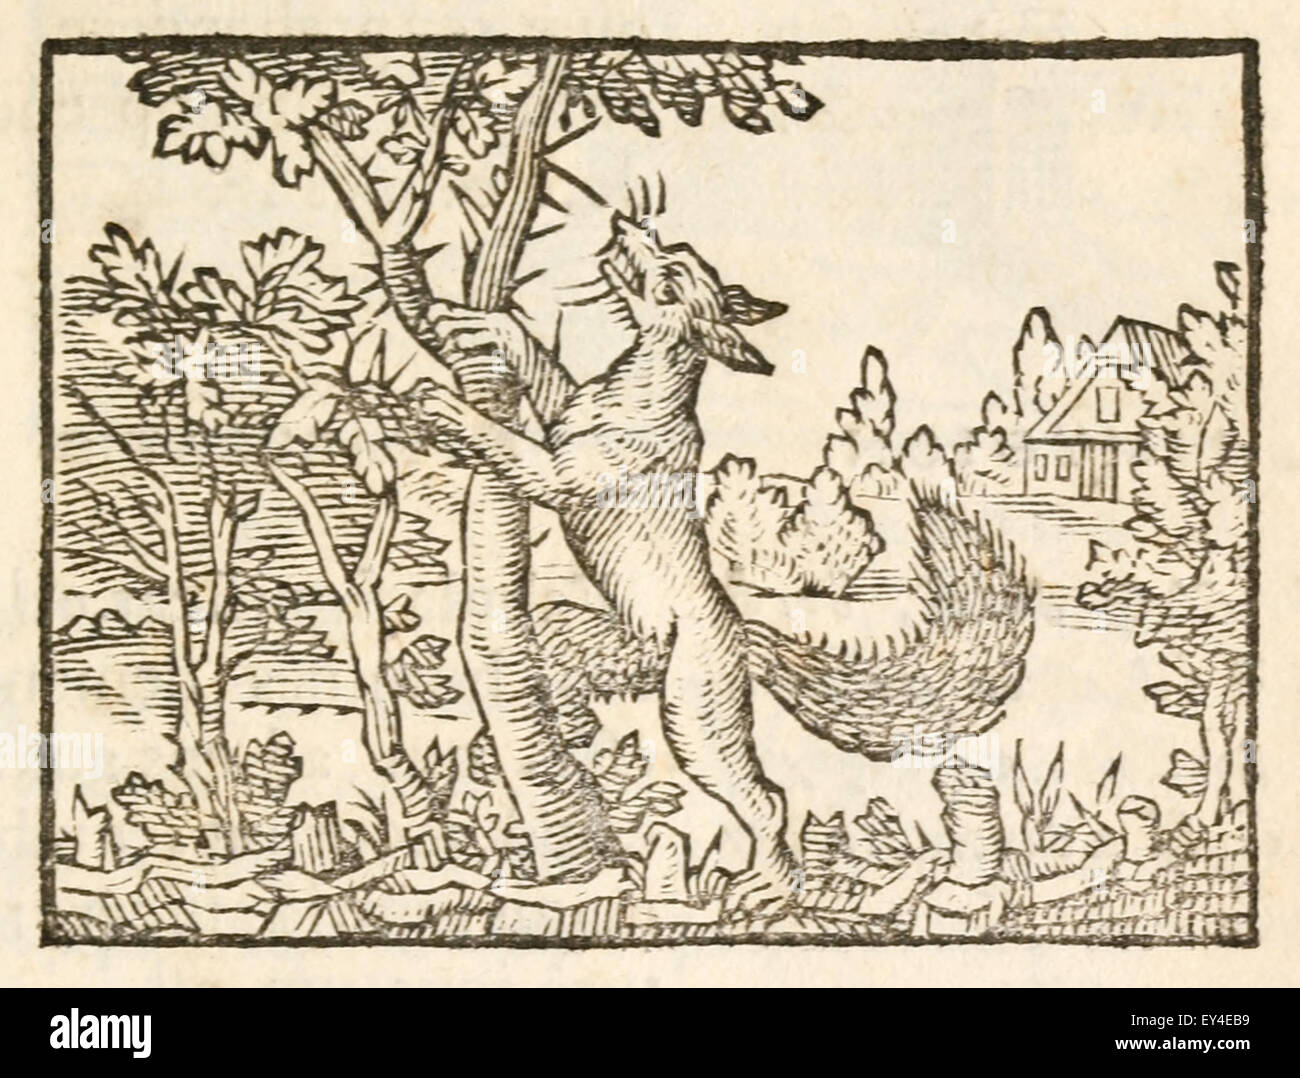 "Der Fuchs und der Dornbusch" Fabel von Aesop (ca. 600). 17. Jahrhundert Holzschnitt Drucken zur Veranschaulichung Aesop Fabeln. Siehe Beschreibung für mehr Informationen. Stockfoto